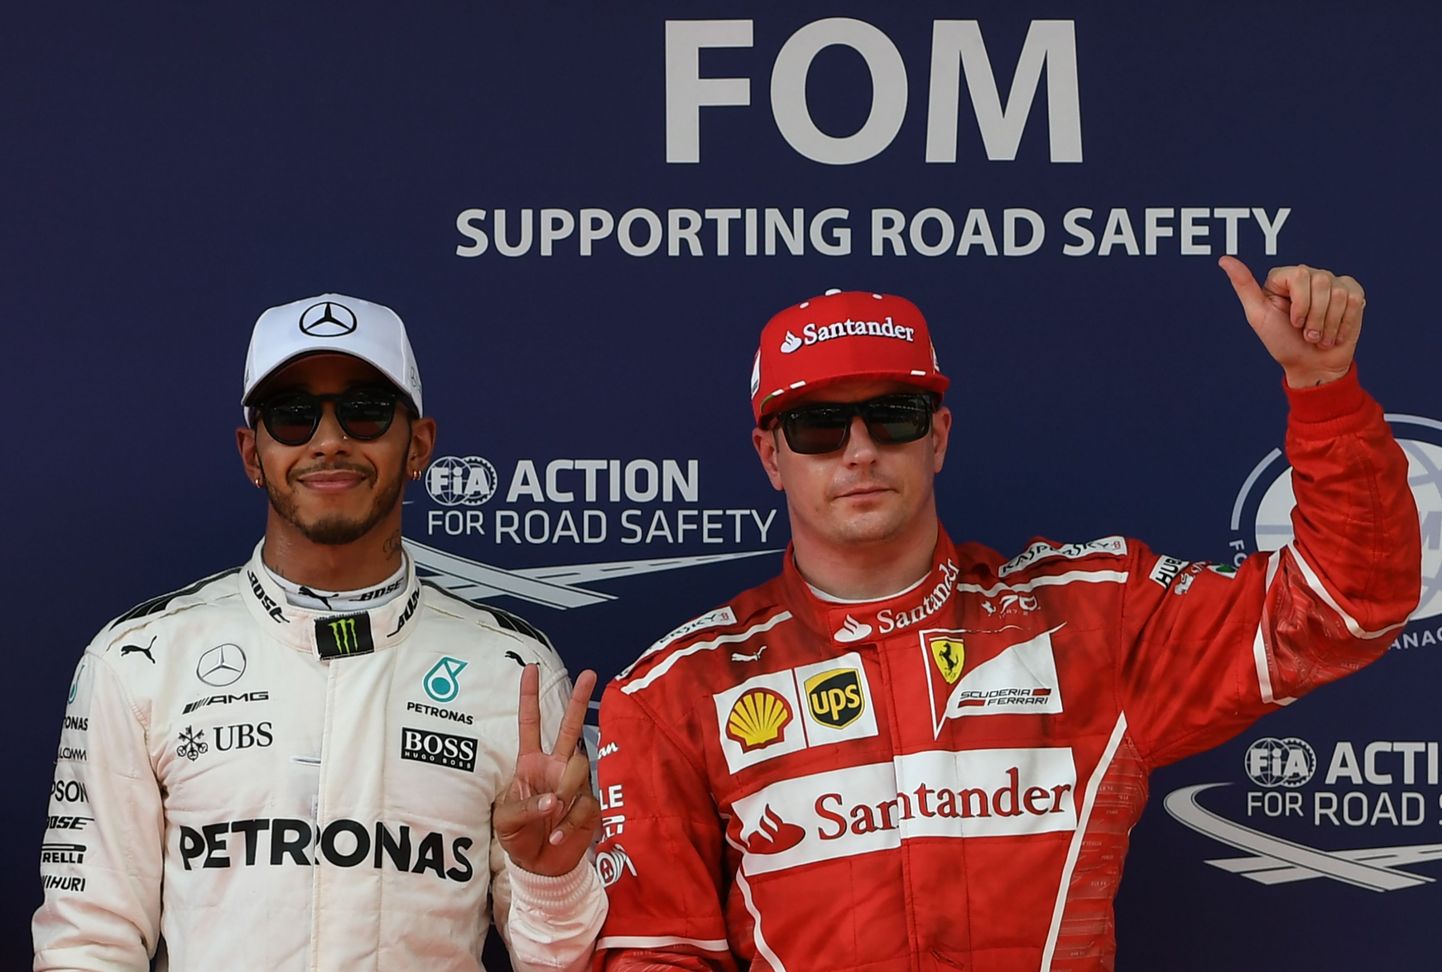 Ka Lewis Hamilton ja Kimi Räikkönen otsustasid lõpuks pilootide ametiühinguga liituda.